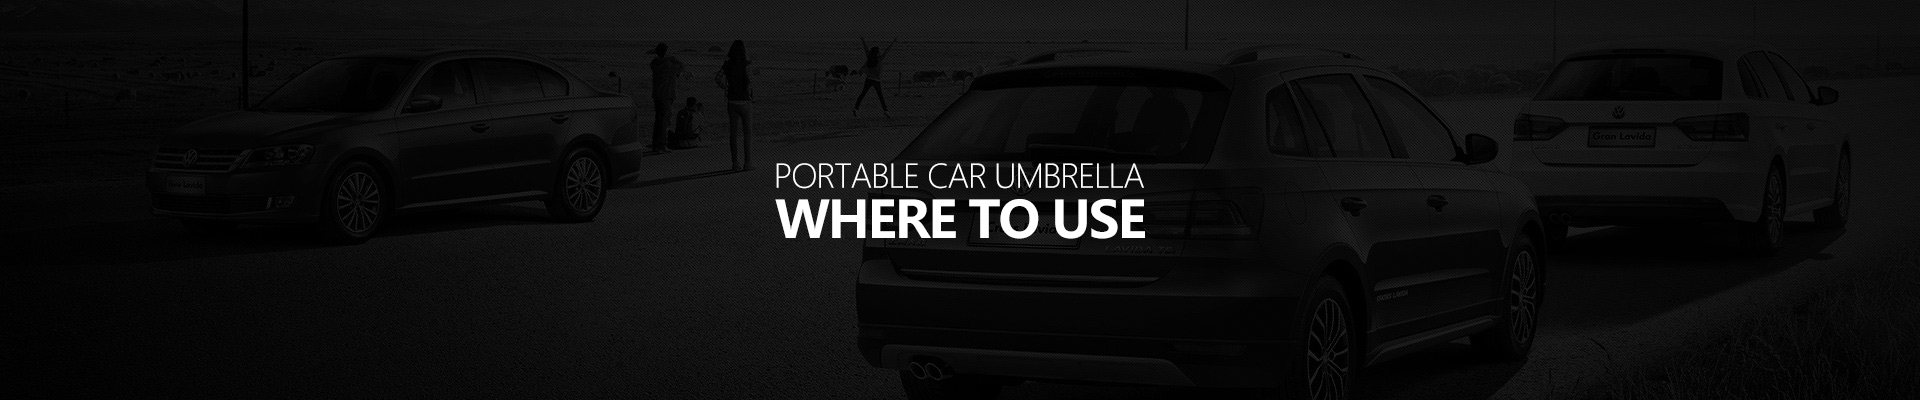 Portable-car-umbrella-where-to-use